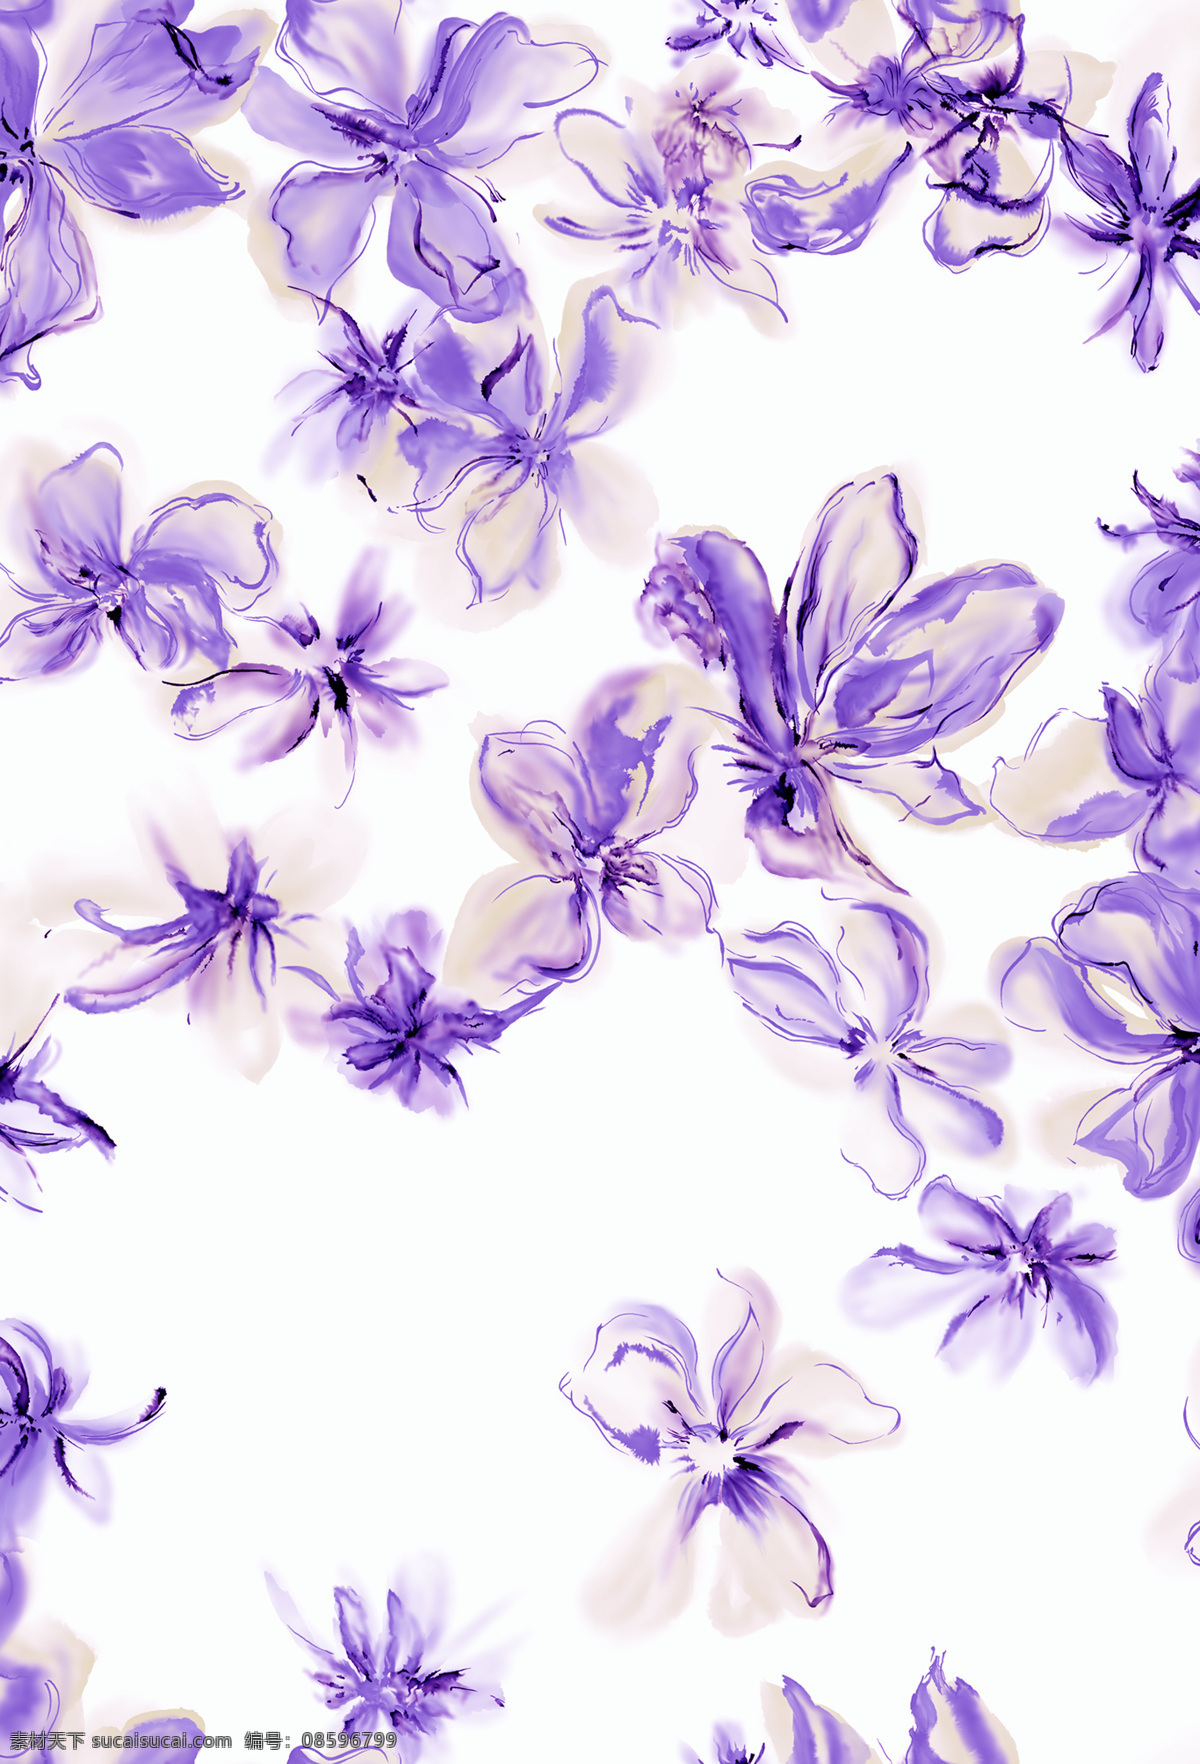 紫色 花朵 烂漫 时尚 移门 浪漫花朵 时尚移门 紫色花 紫色花朵 时尚系列 家居装饰素材